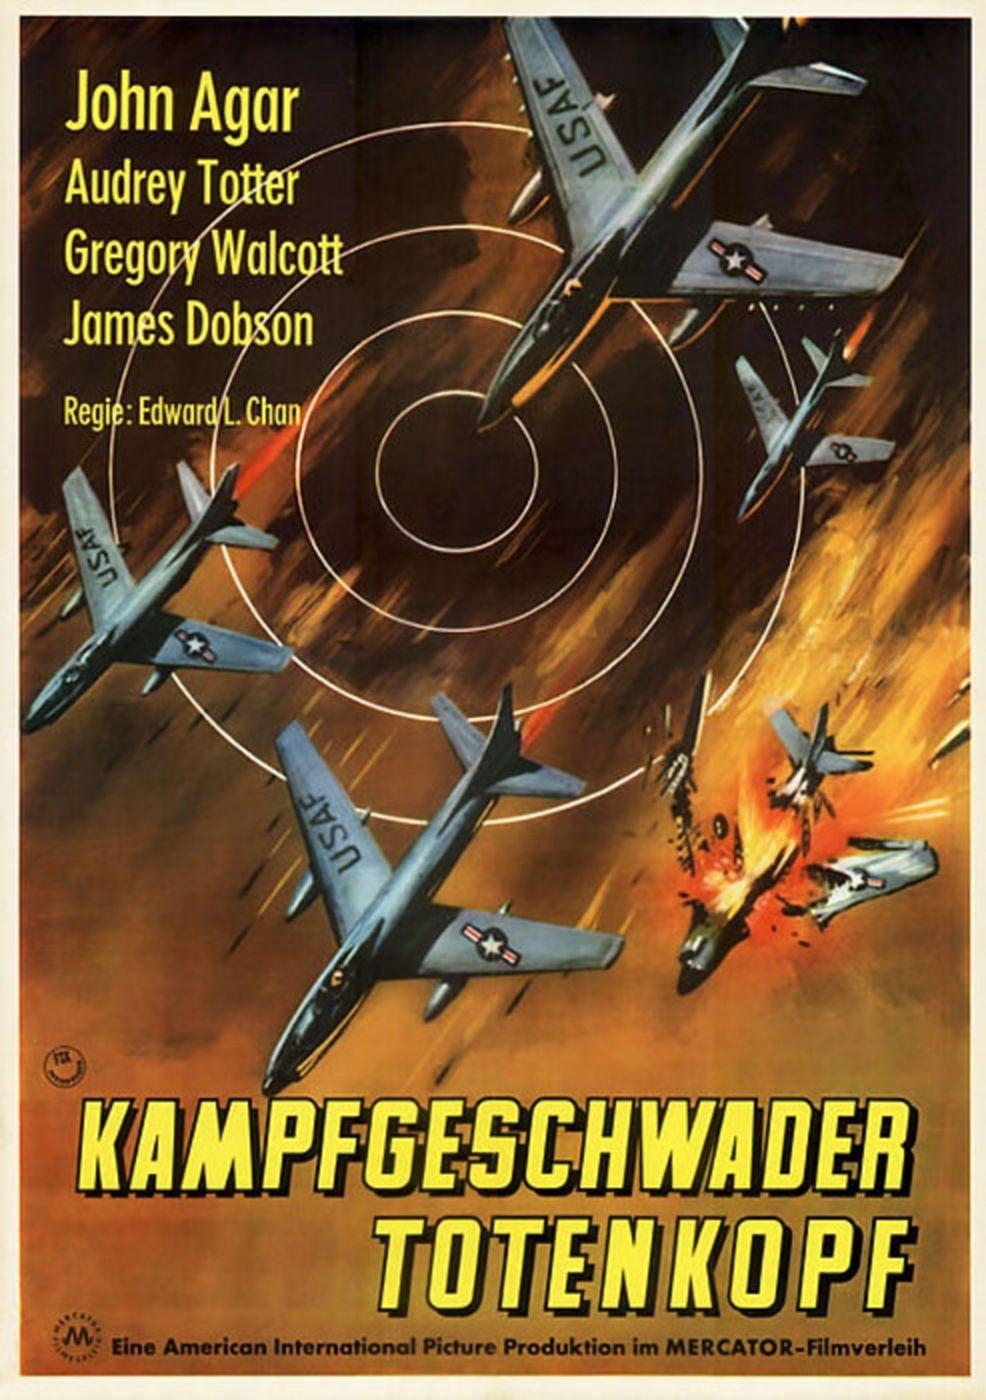 Kampfgeschwader Totenkopf poster